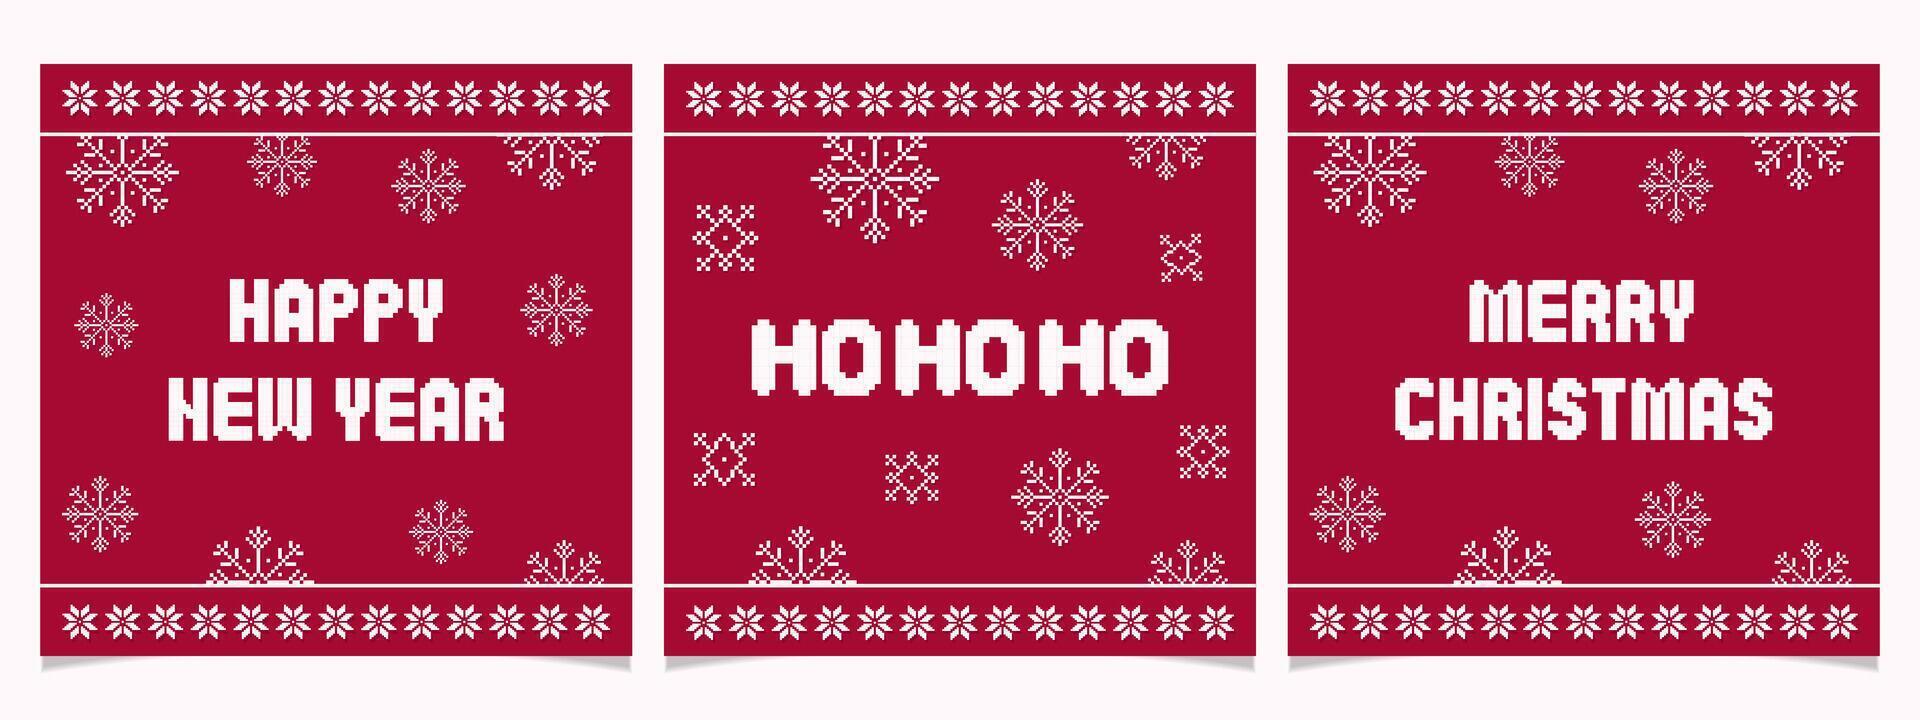 píxel Navidad y nuevo año tarjetas conjunto con copos de nieve.pixelados sencillo y de moda invierno decoraciones diciembre impresión. vector